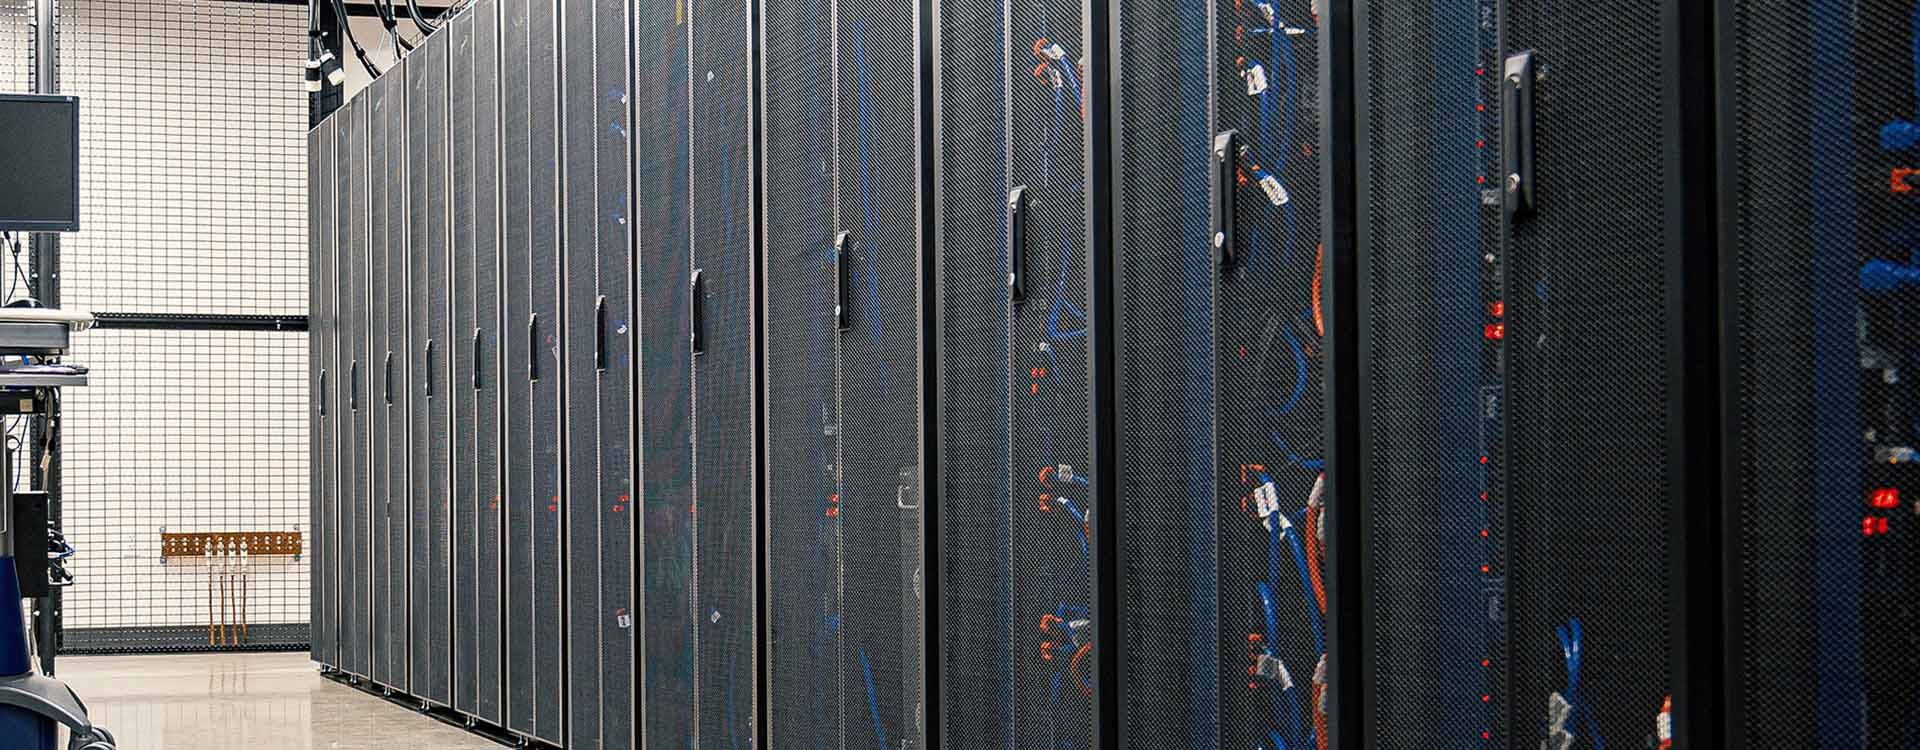 datacenter-server-racks-1